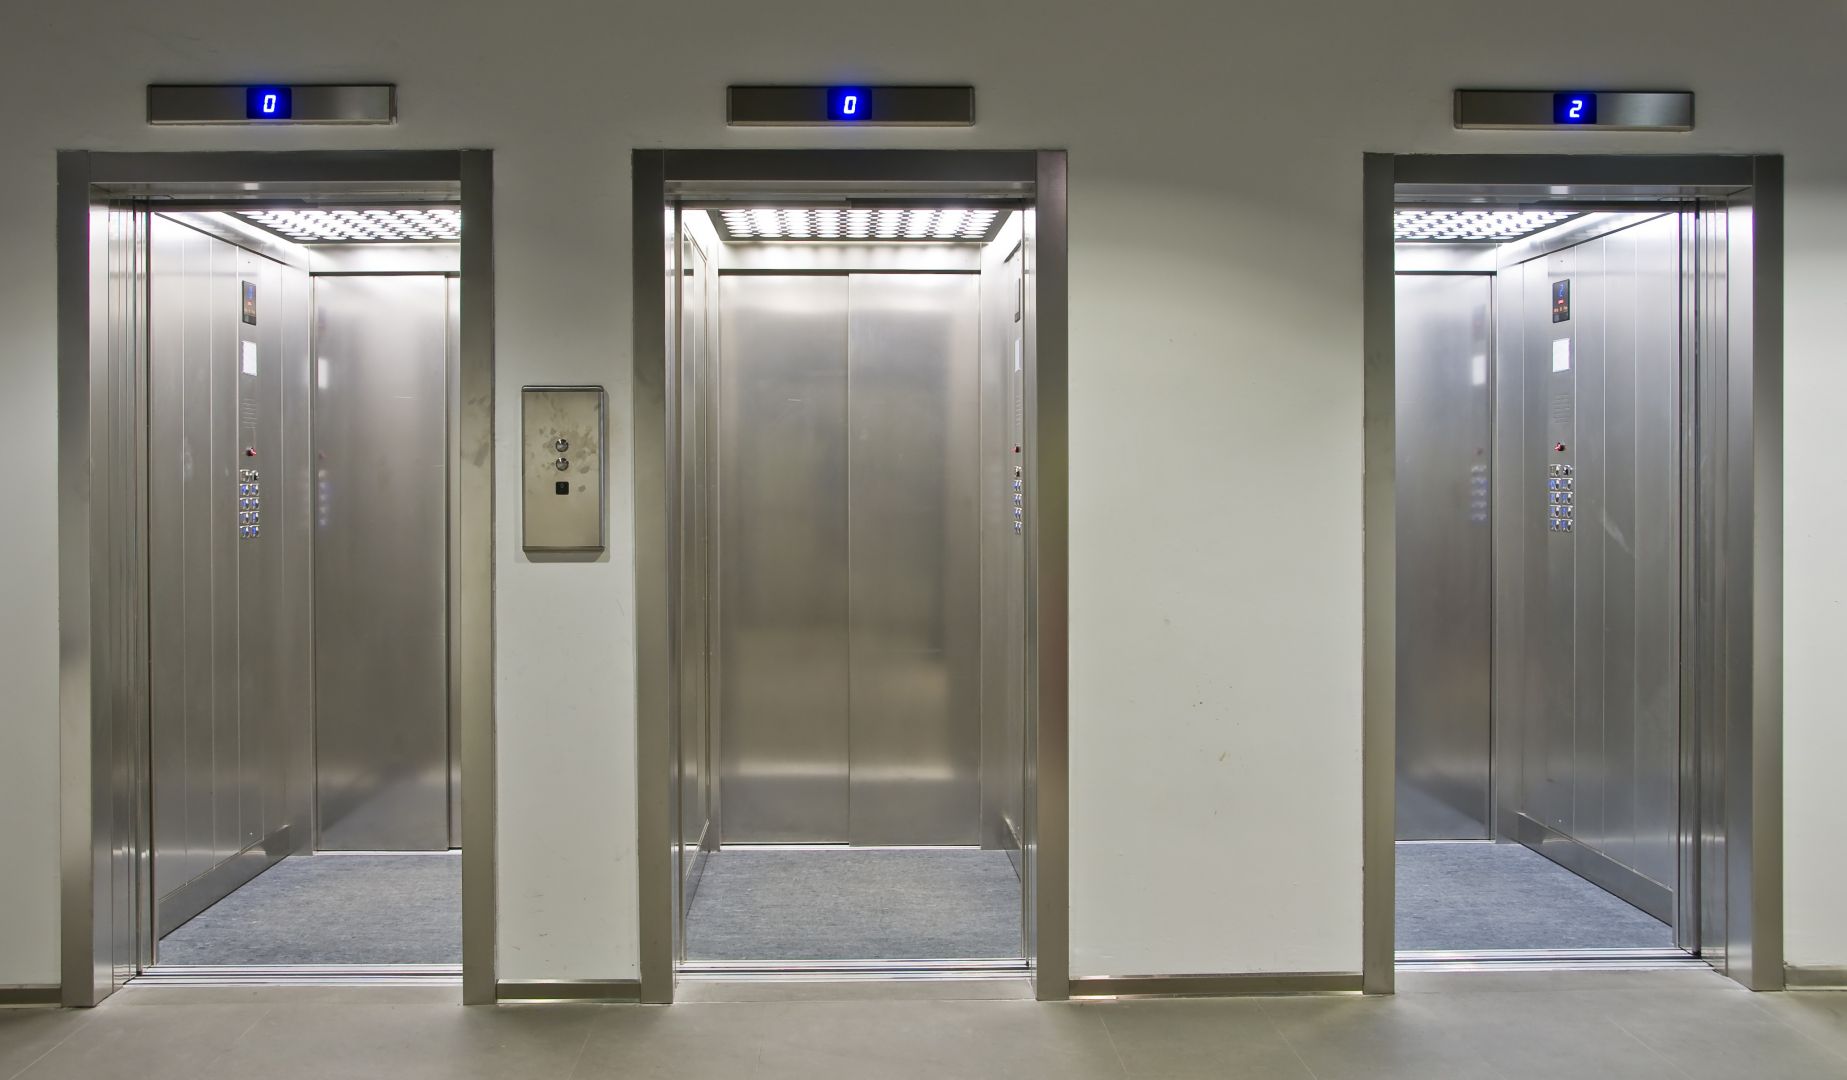 Poptávka na návrh výtahu pro přepravu osob (Výtahy a servis) - Klatovy